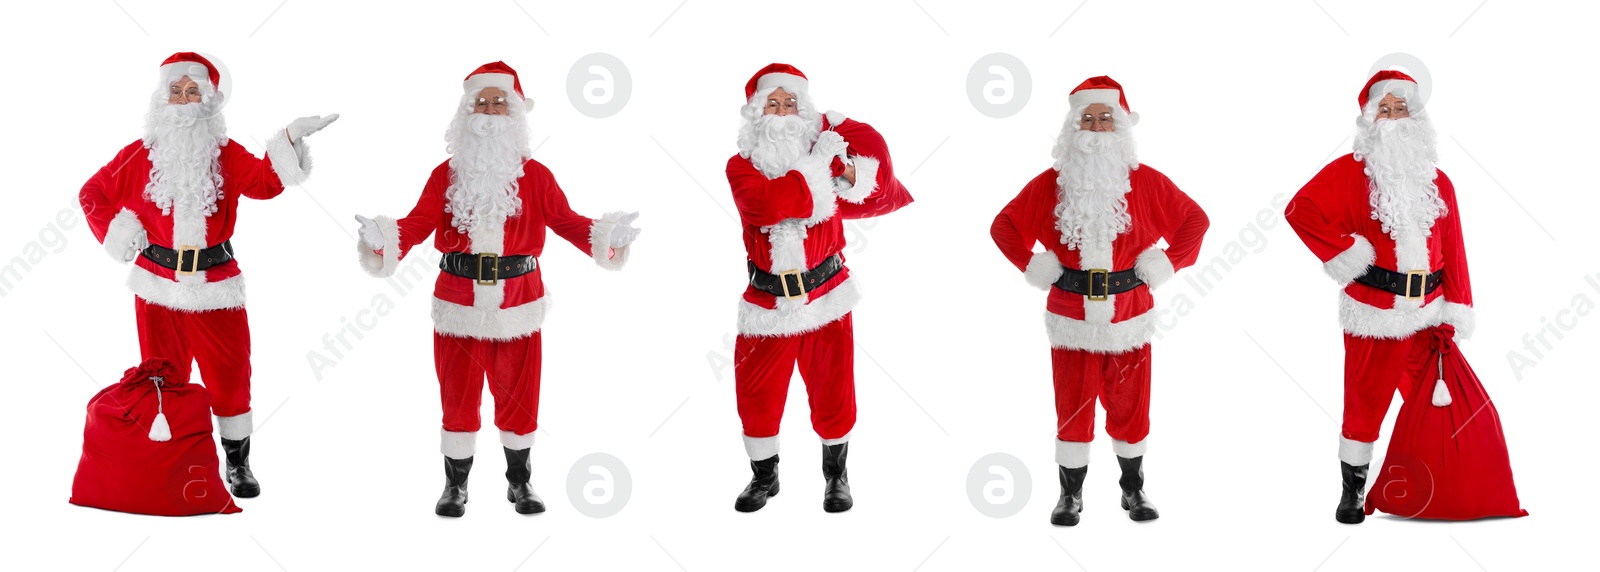 Image of Santa Claus on white background, set of photos. Christmas celebration